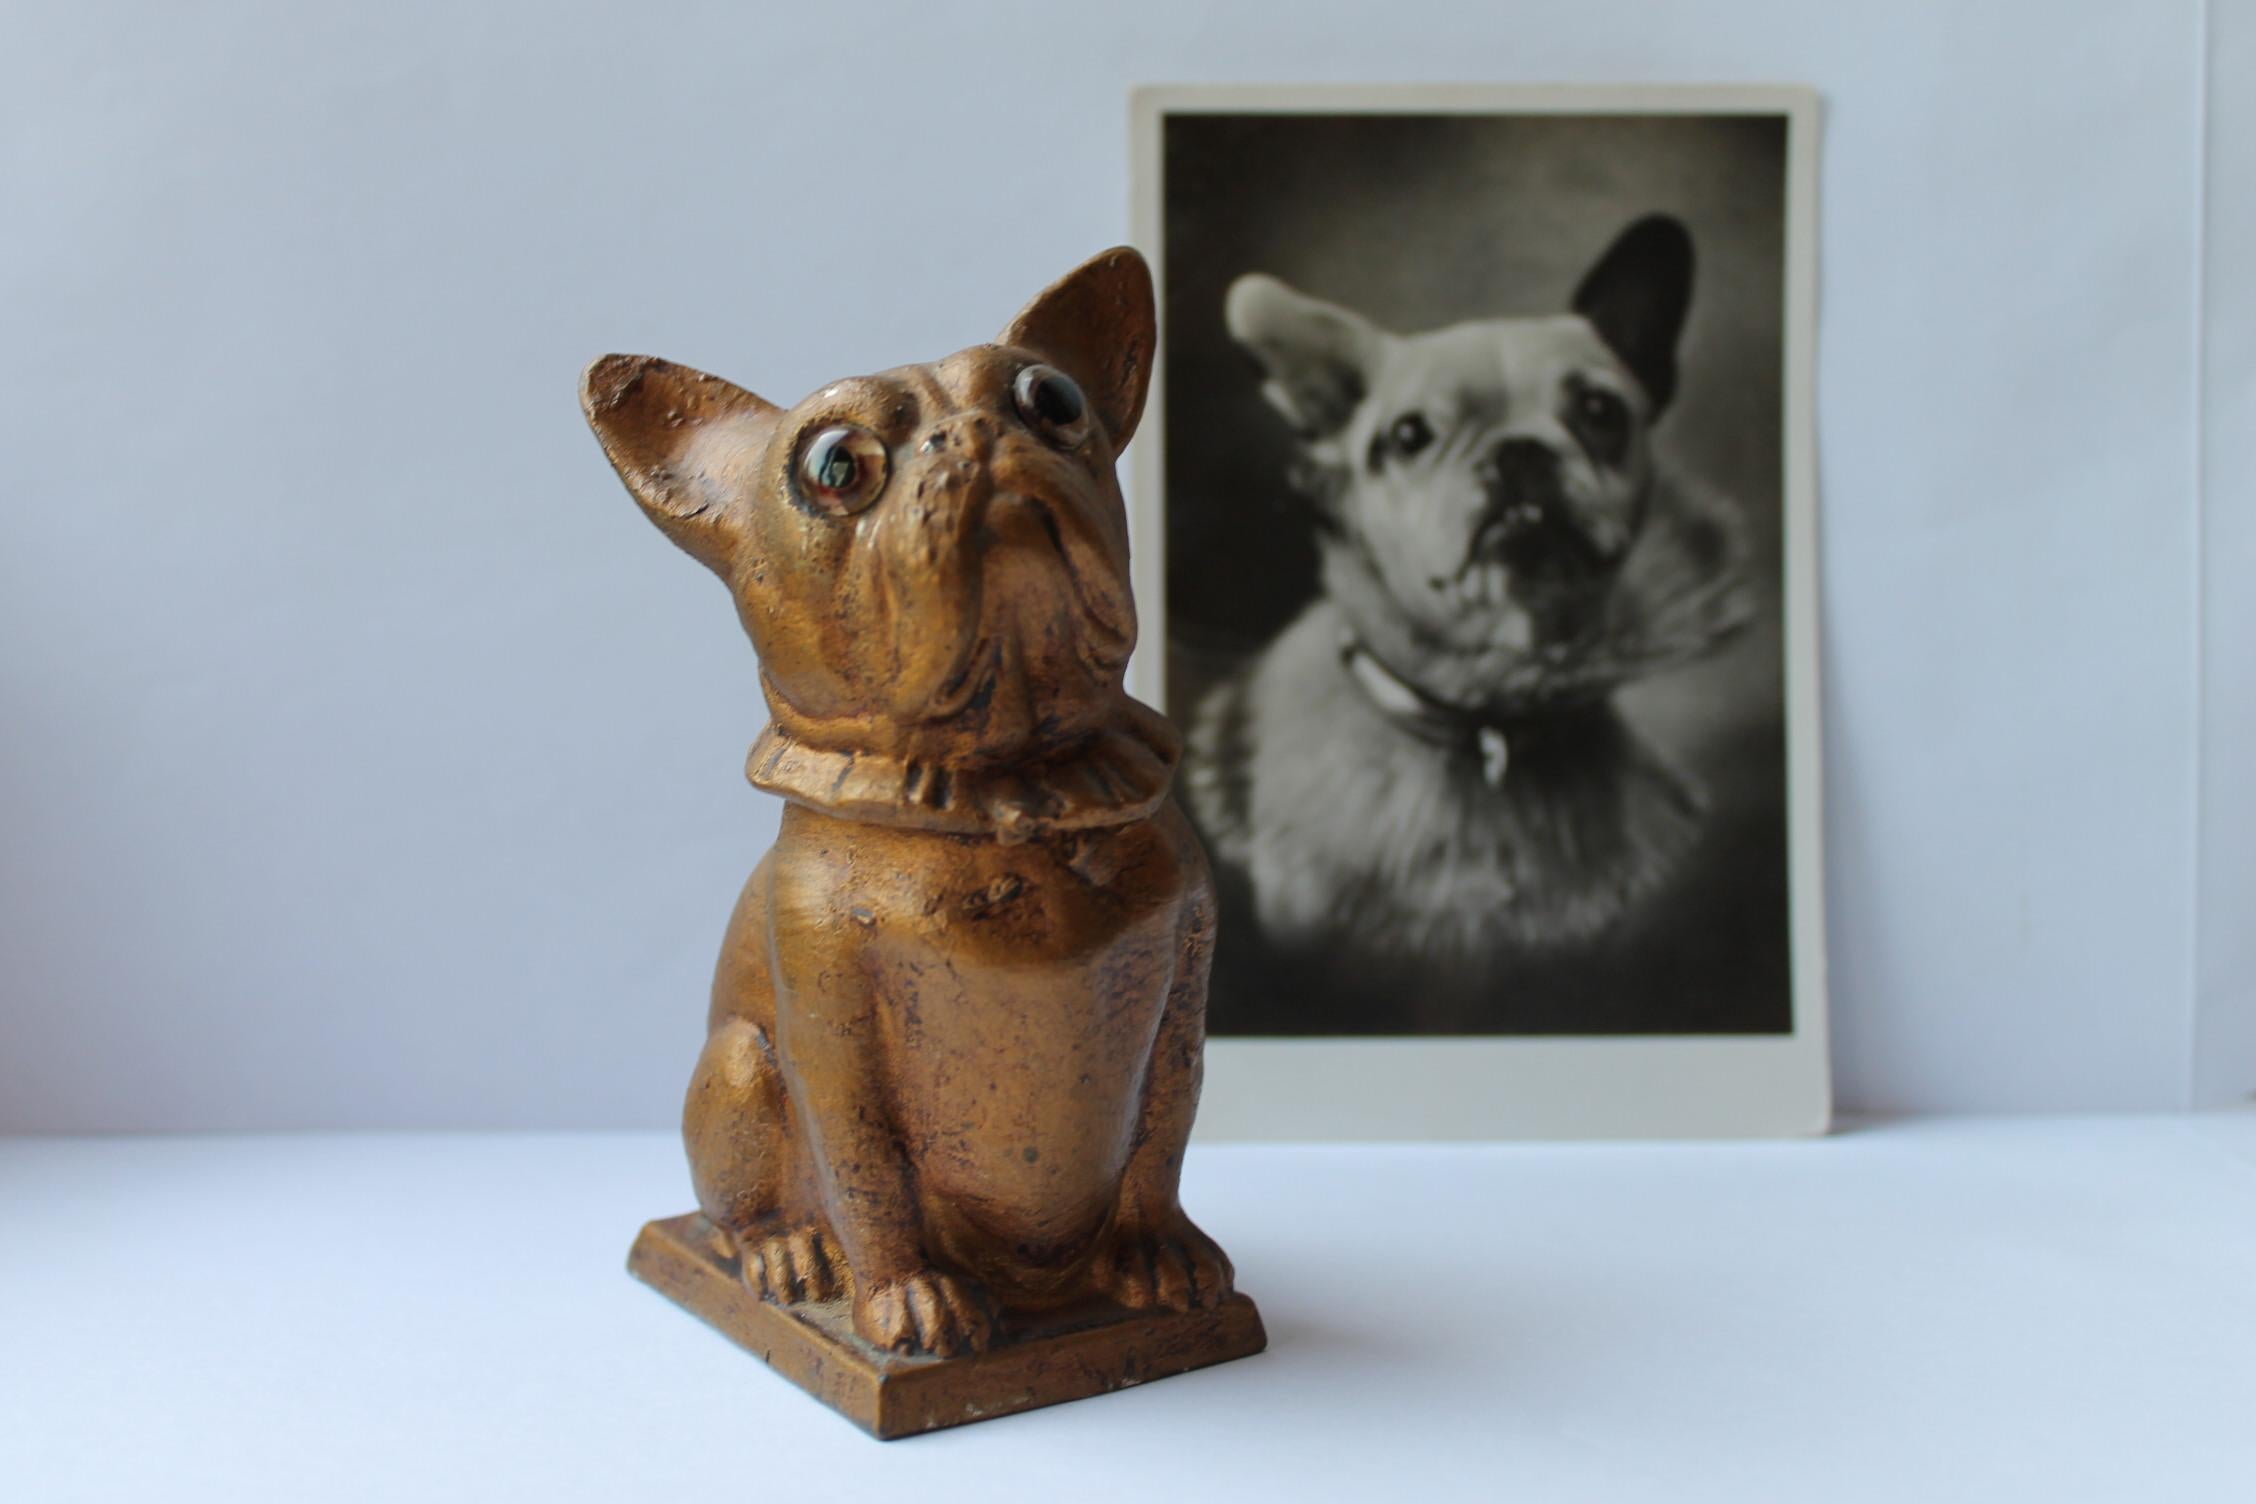 Tirelire mignon Bulldog en métal peint à l'or.
Cette figurine de chien bulldog de la Tirelire a  De grands yeux qui regardent dans les tiens, alors tu ne peux pas lui dire non.
Il s'agit d'une figurine détaillée de bouledogue avec collier.
Pour